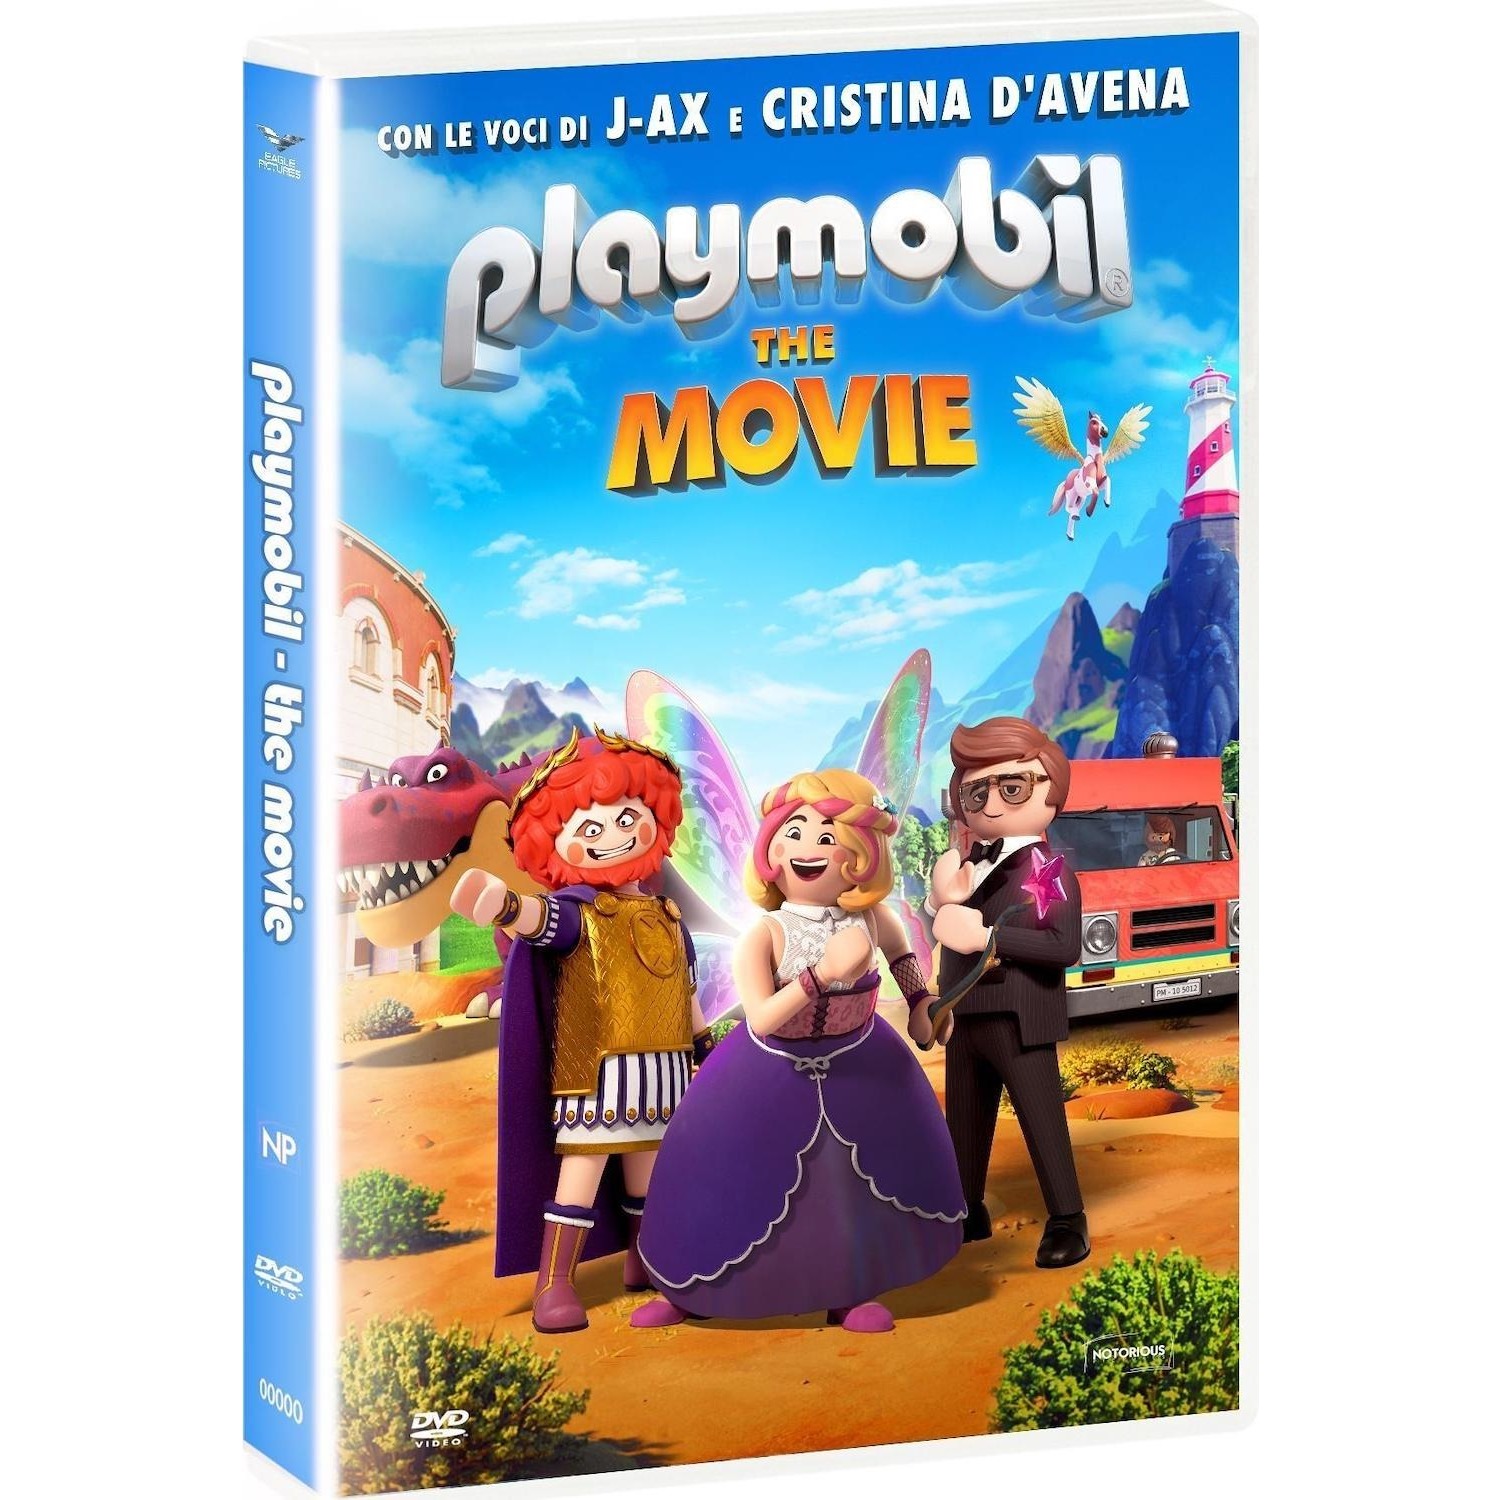 Immagine per DVD Playmobil - The movie da DIMOStore